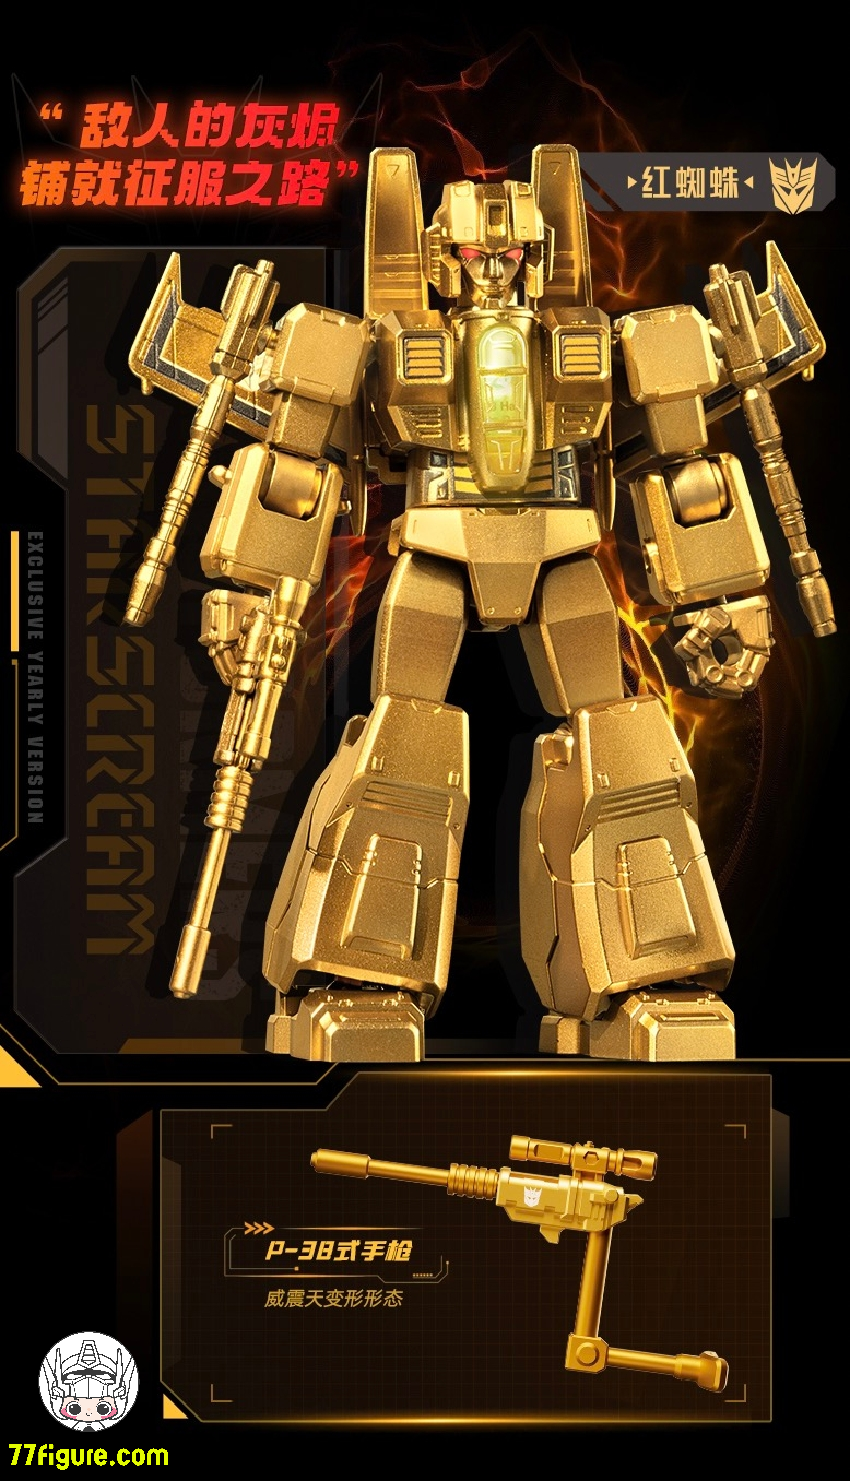 【品切れ】Bloks Transformers ゴールデン ラグーン周年版 5 個セット プラモデル